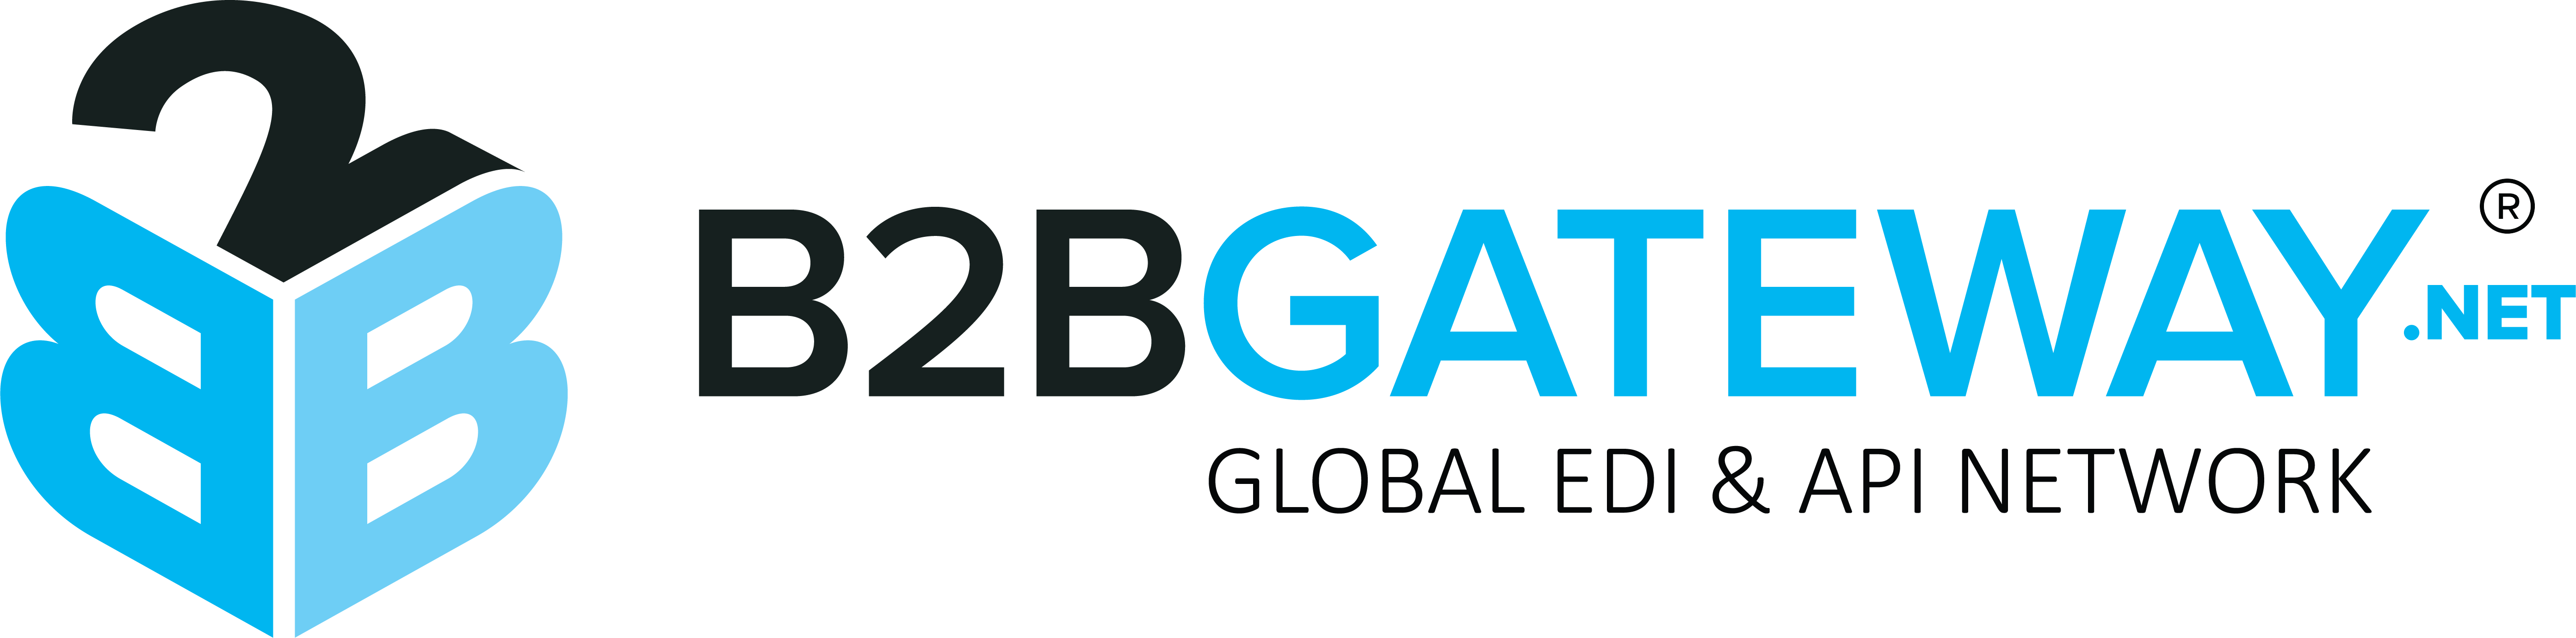 B2B Gateway logo